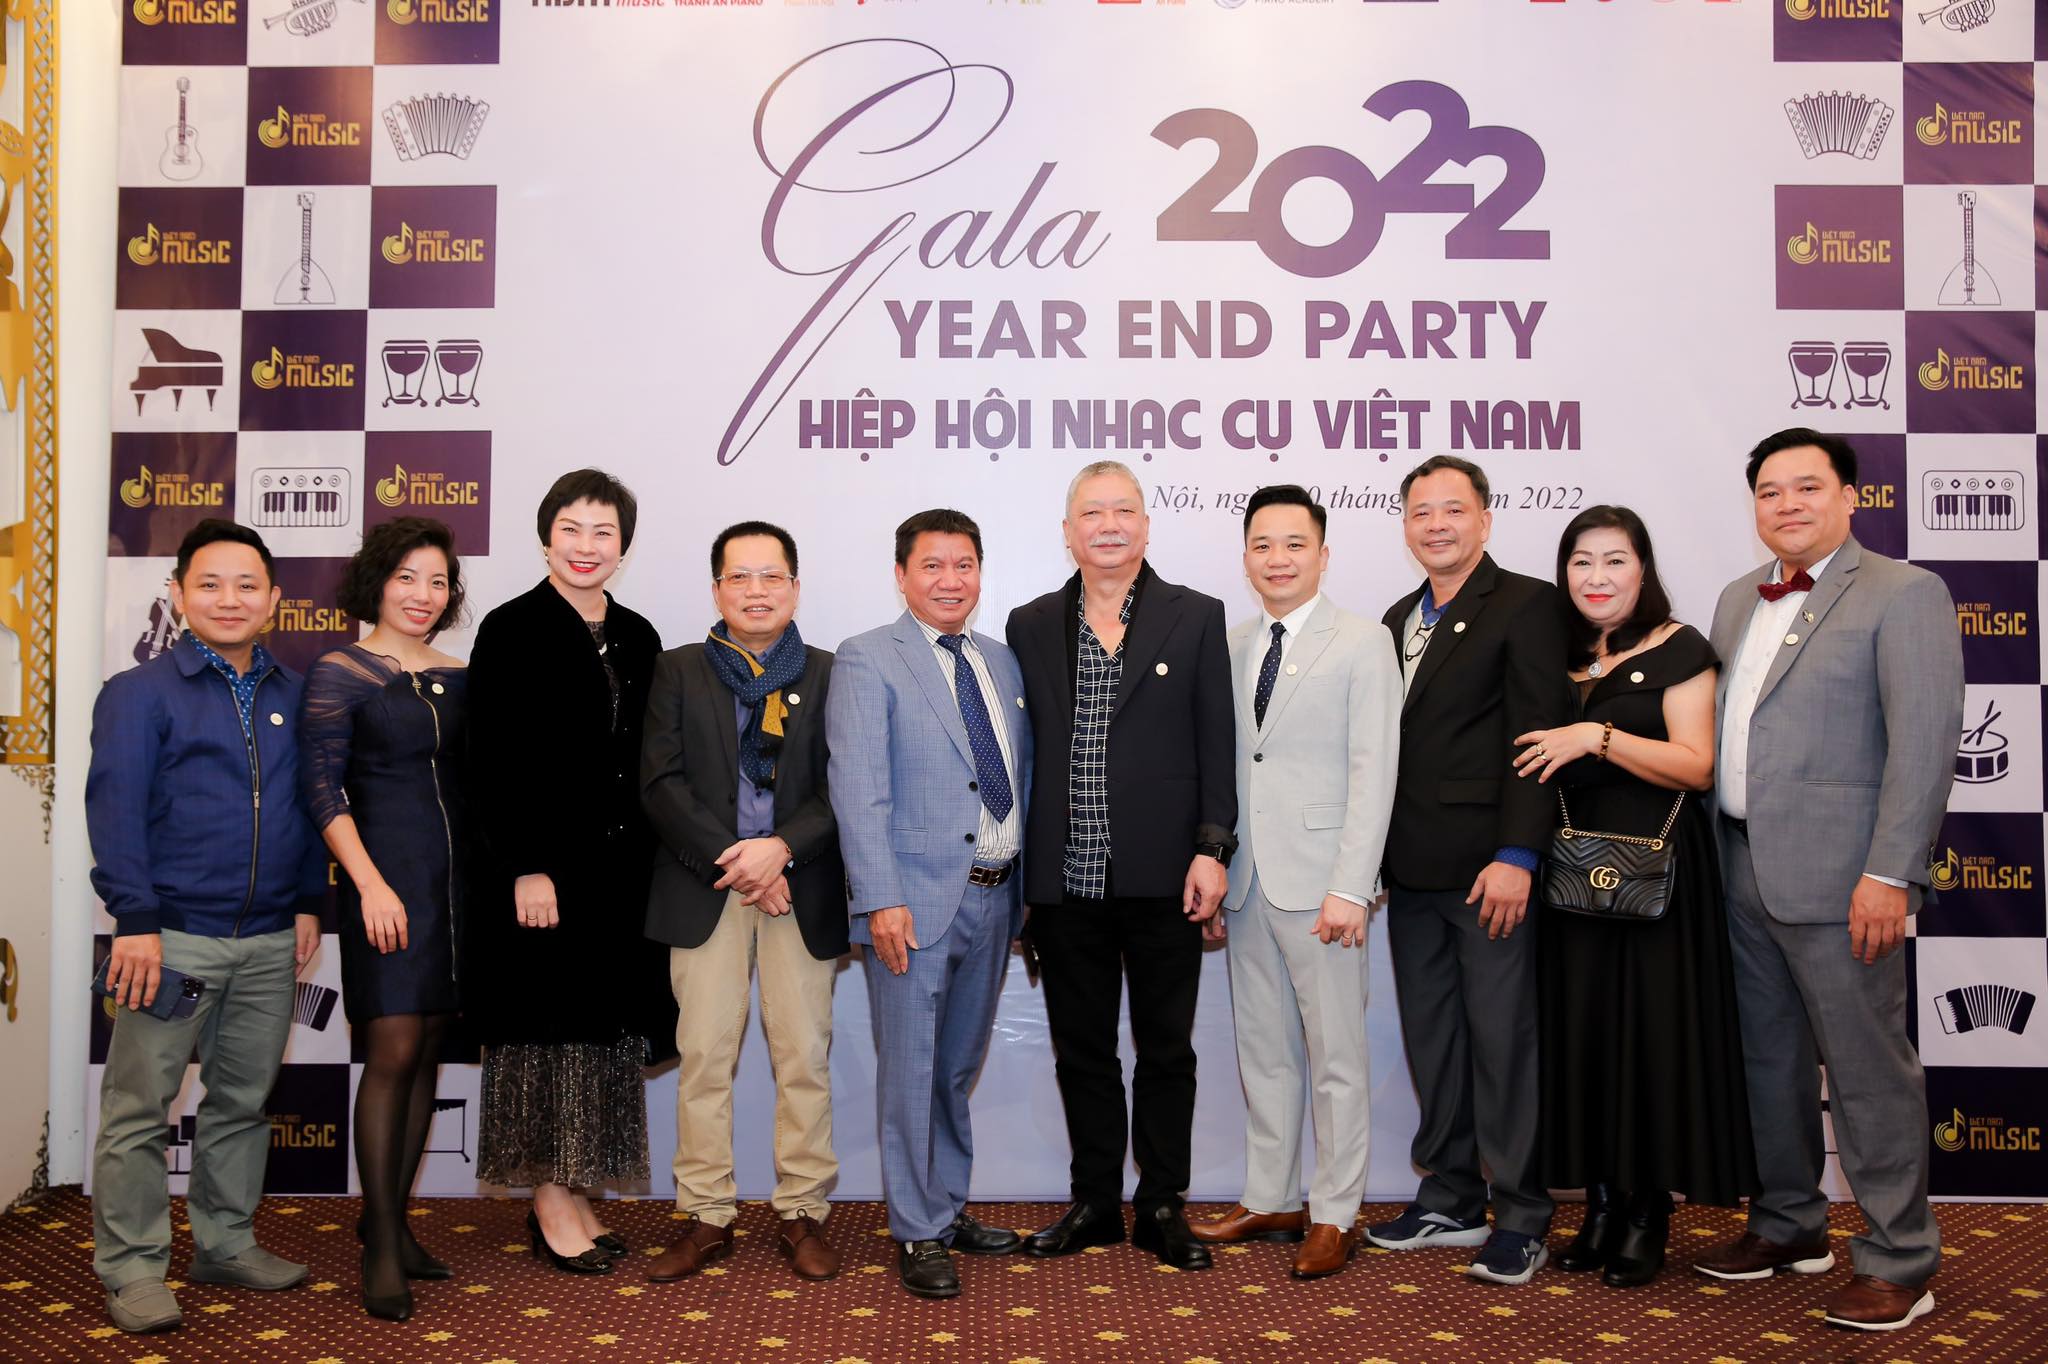 Ngày 20/12/2022 Hiệp hội nhạc cụ Việt Nam chính thức ra đời